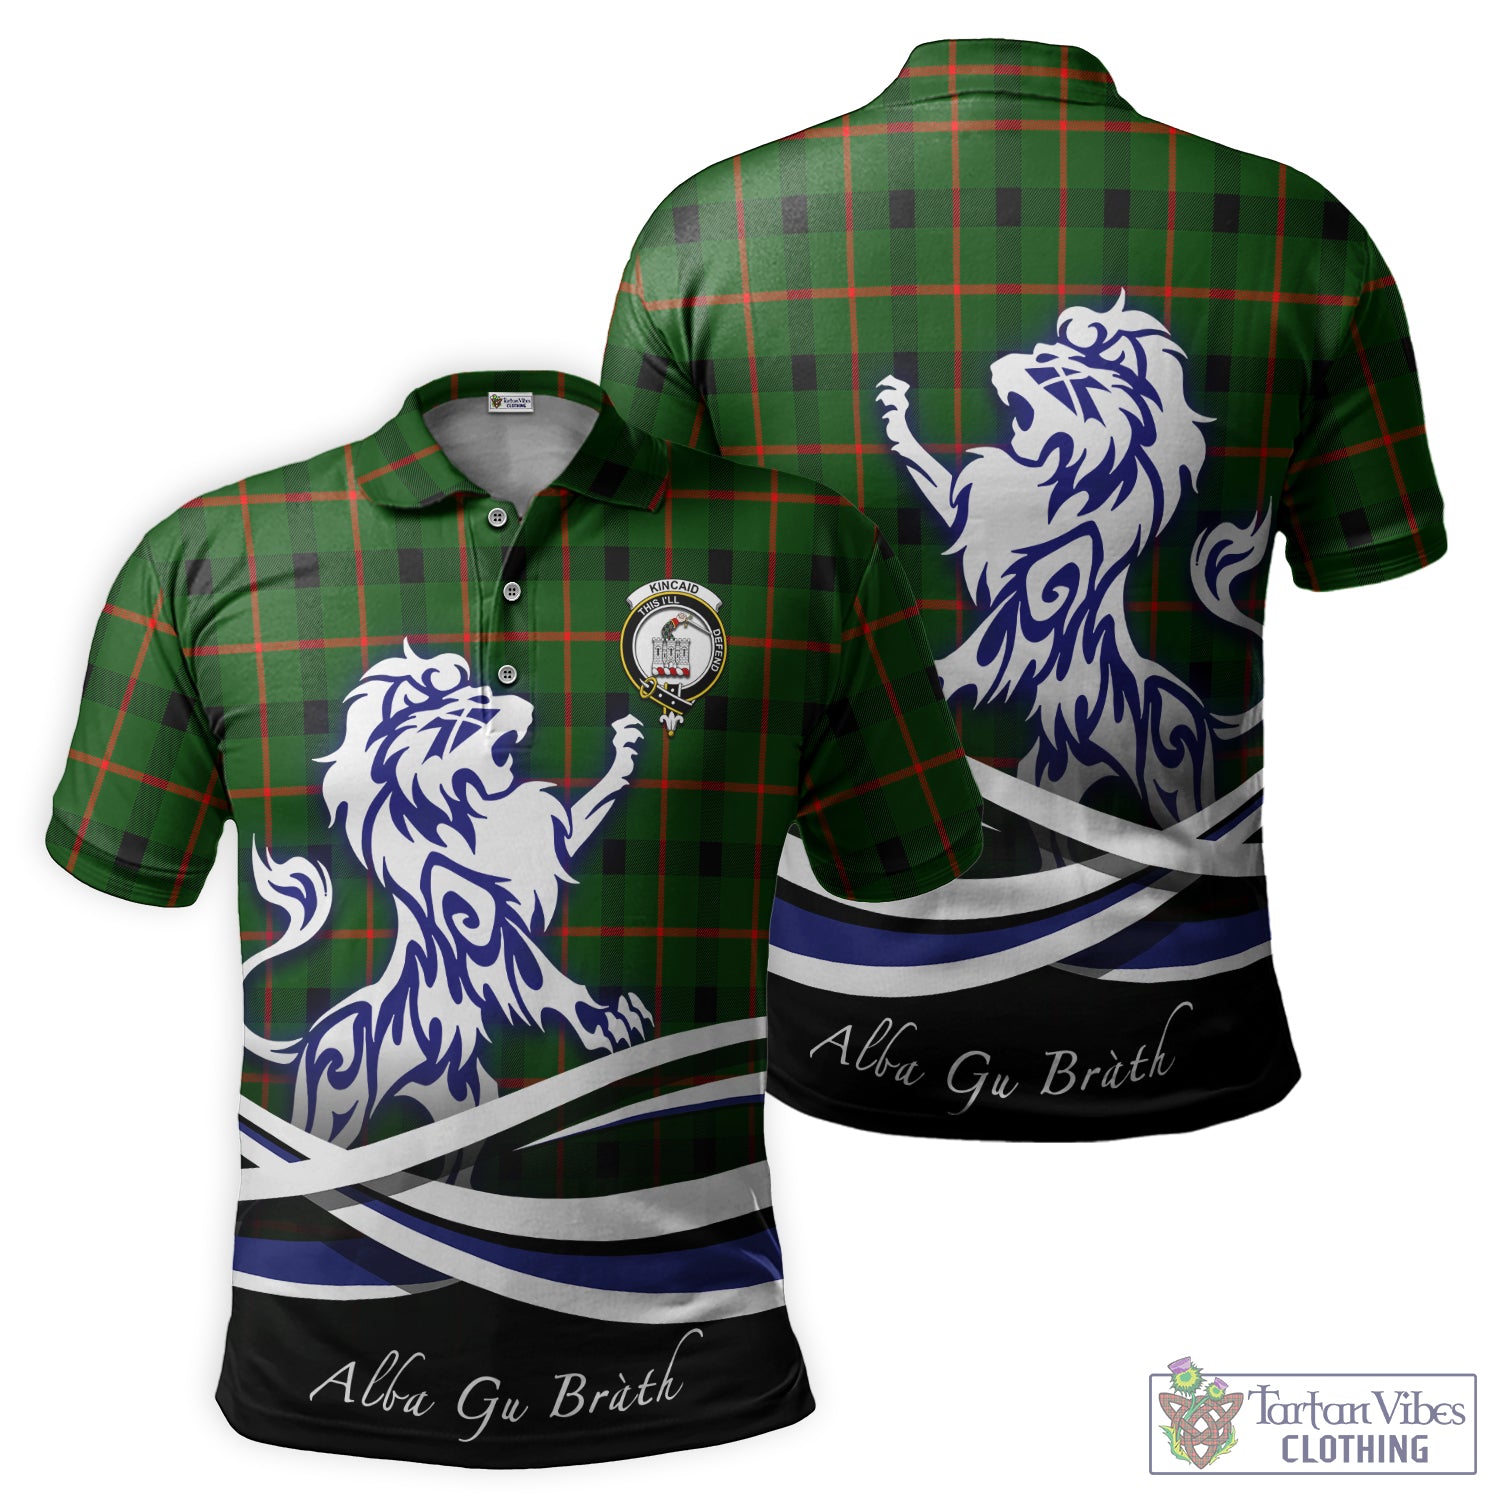 kincaid-modern-tartan-polo-shirt-with-alba-gu-brath-regal-lion-emblem